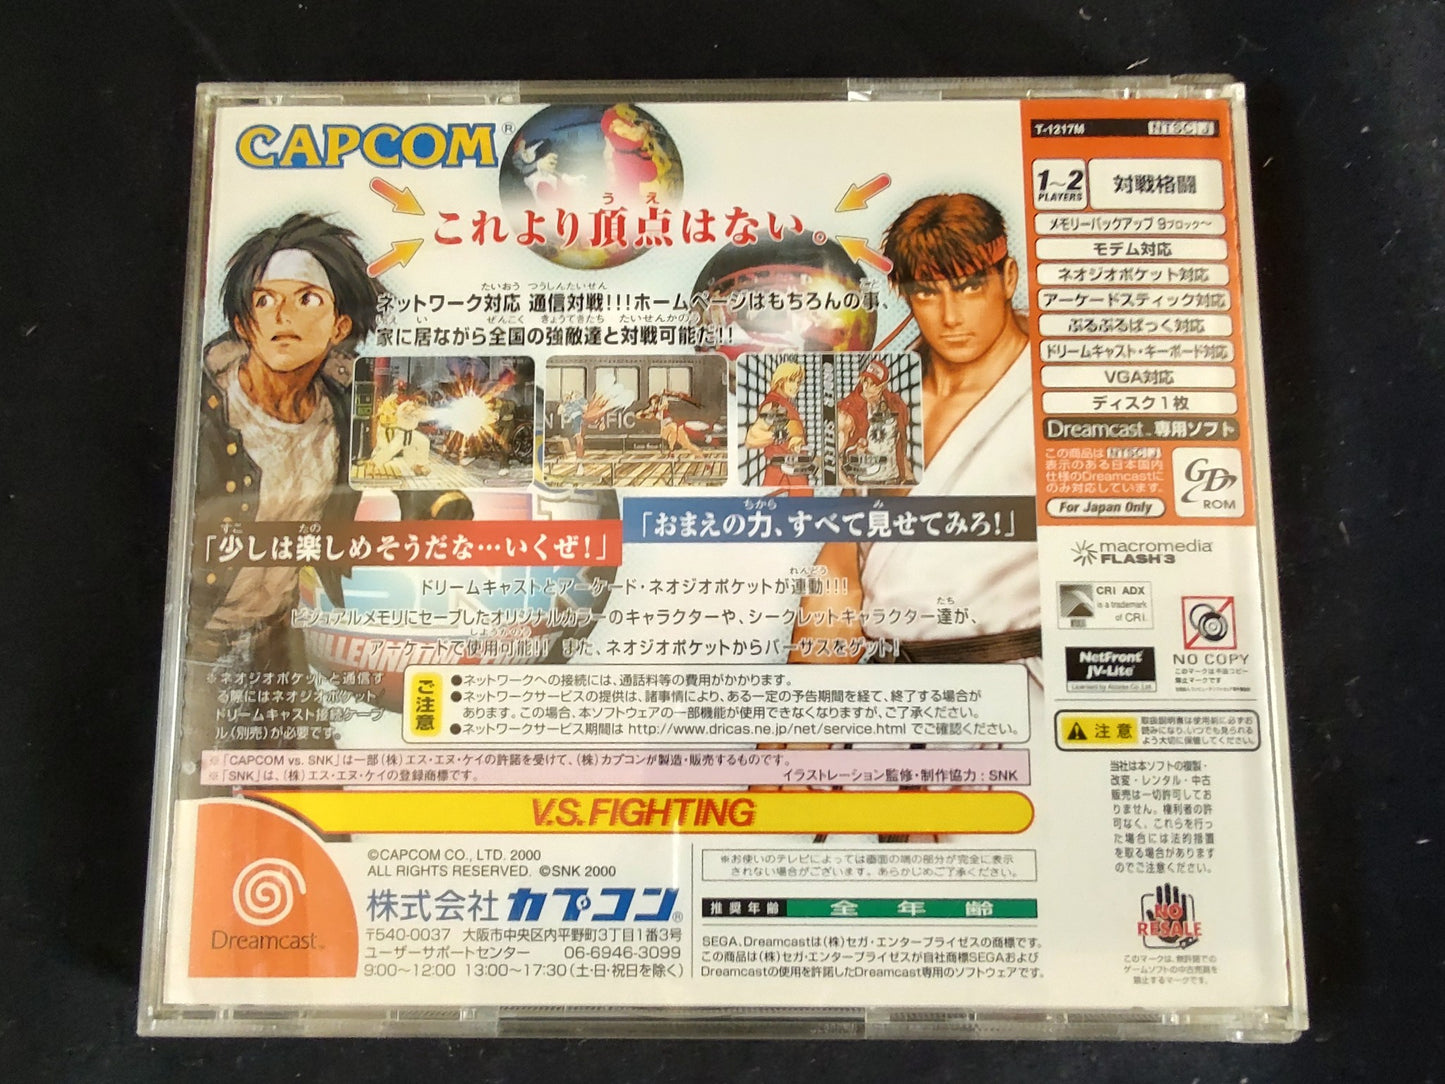 Capcom vs SNK Millennium Fight 2000 SEGA DreamCast, Manual,Boxed set-f0929-